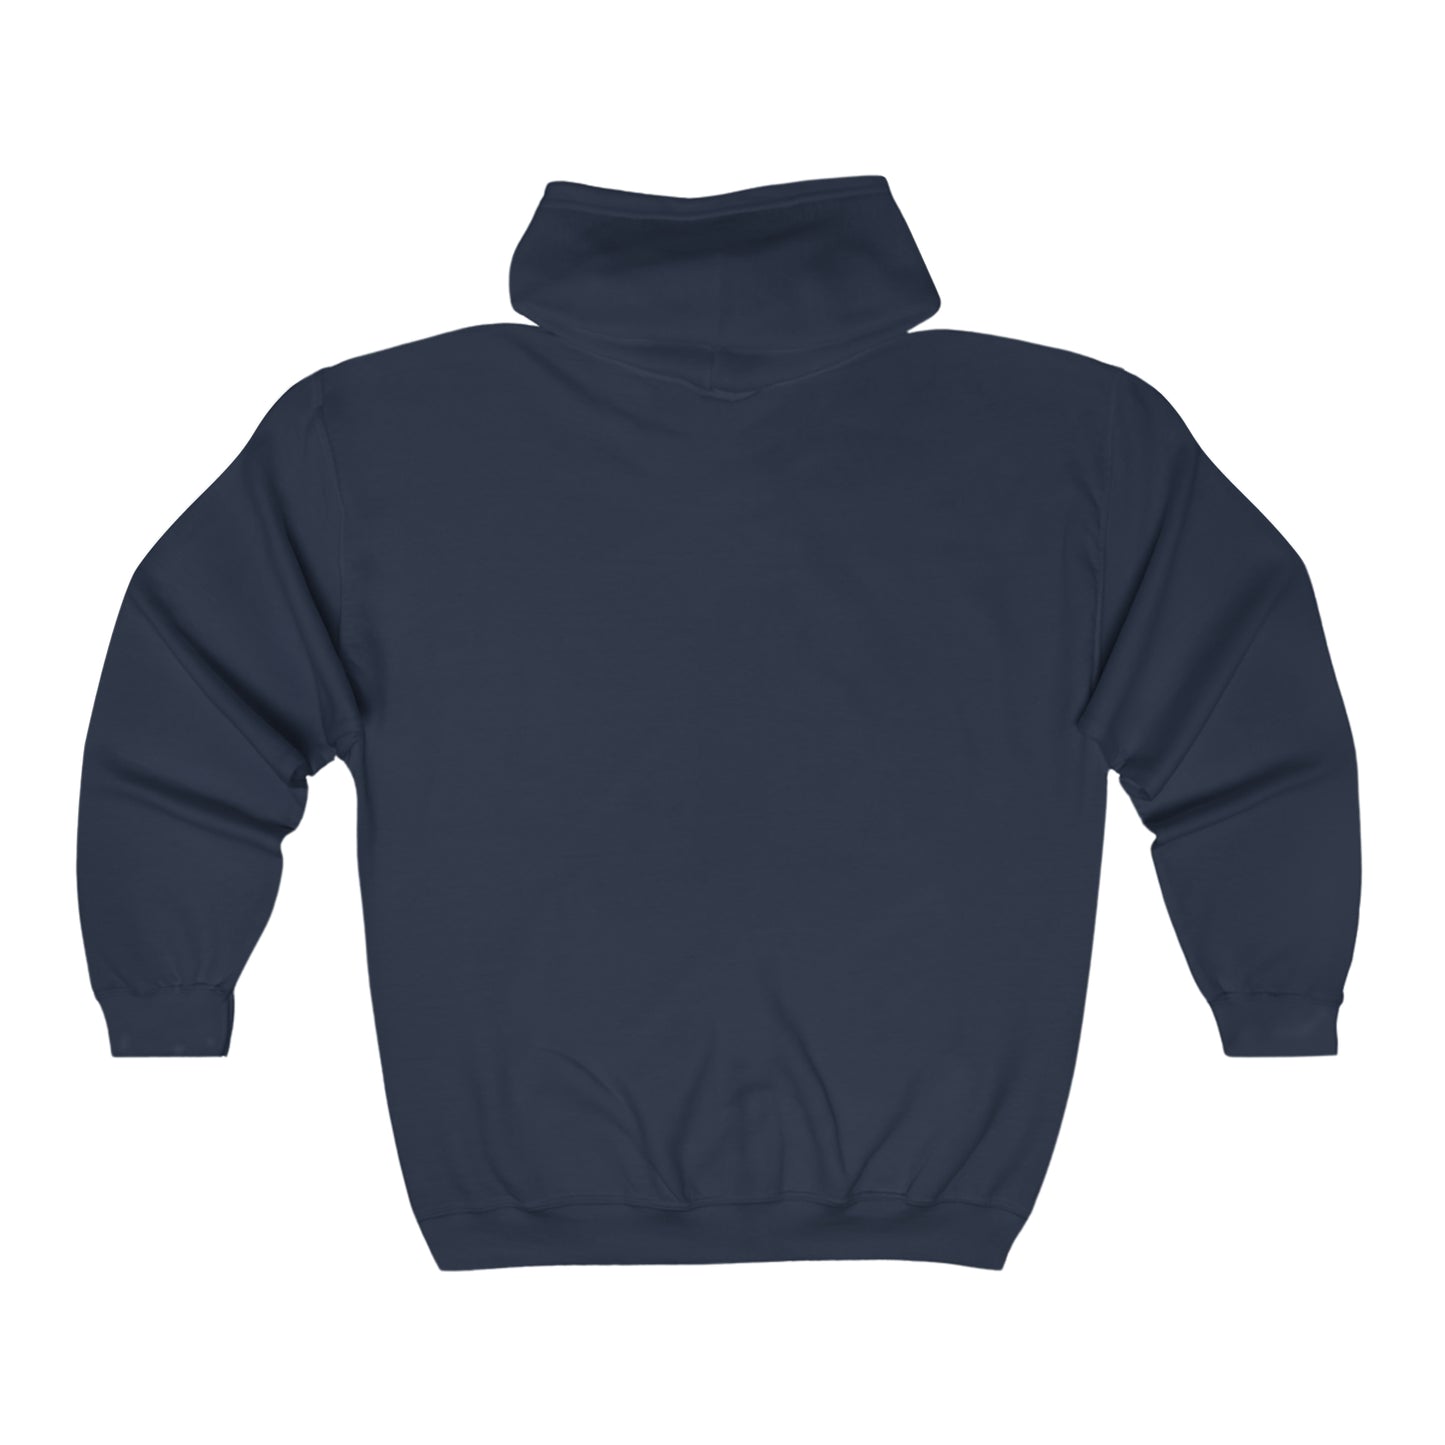 HZ  Hooded Sweatshirt - Impactive Shop